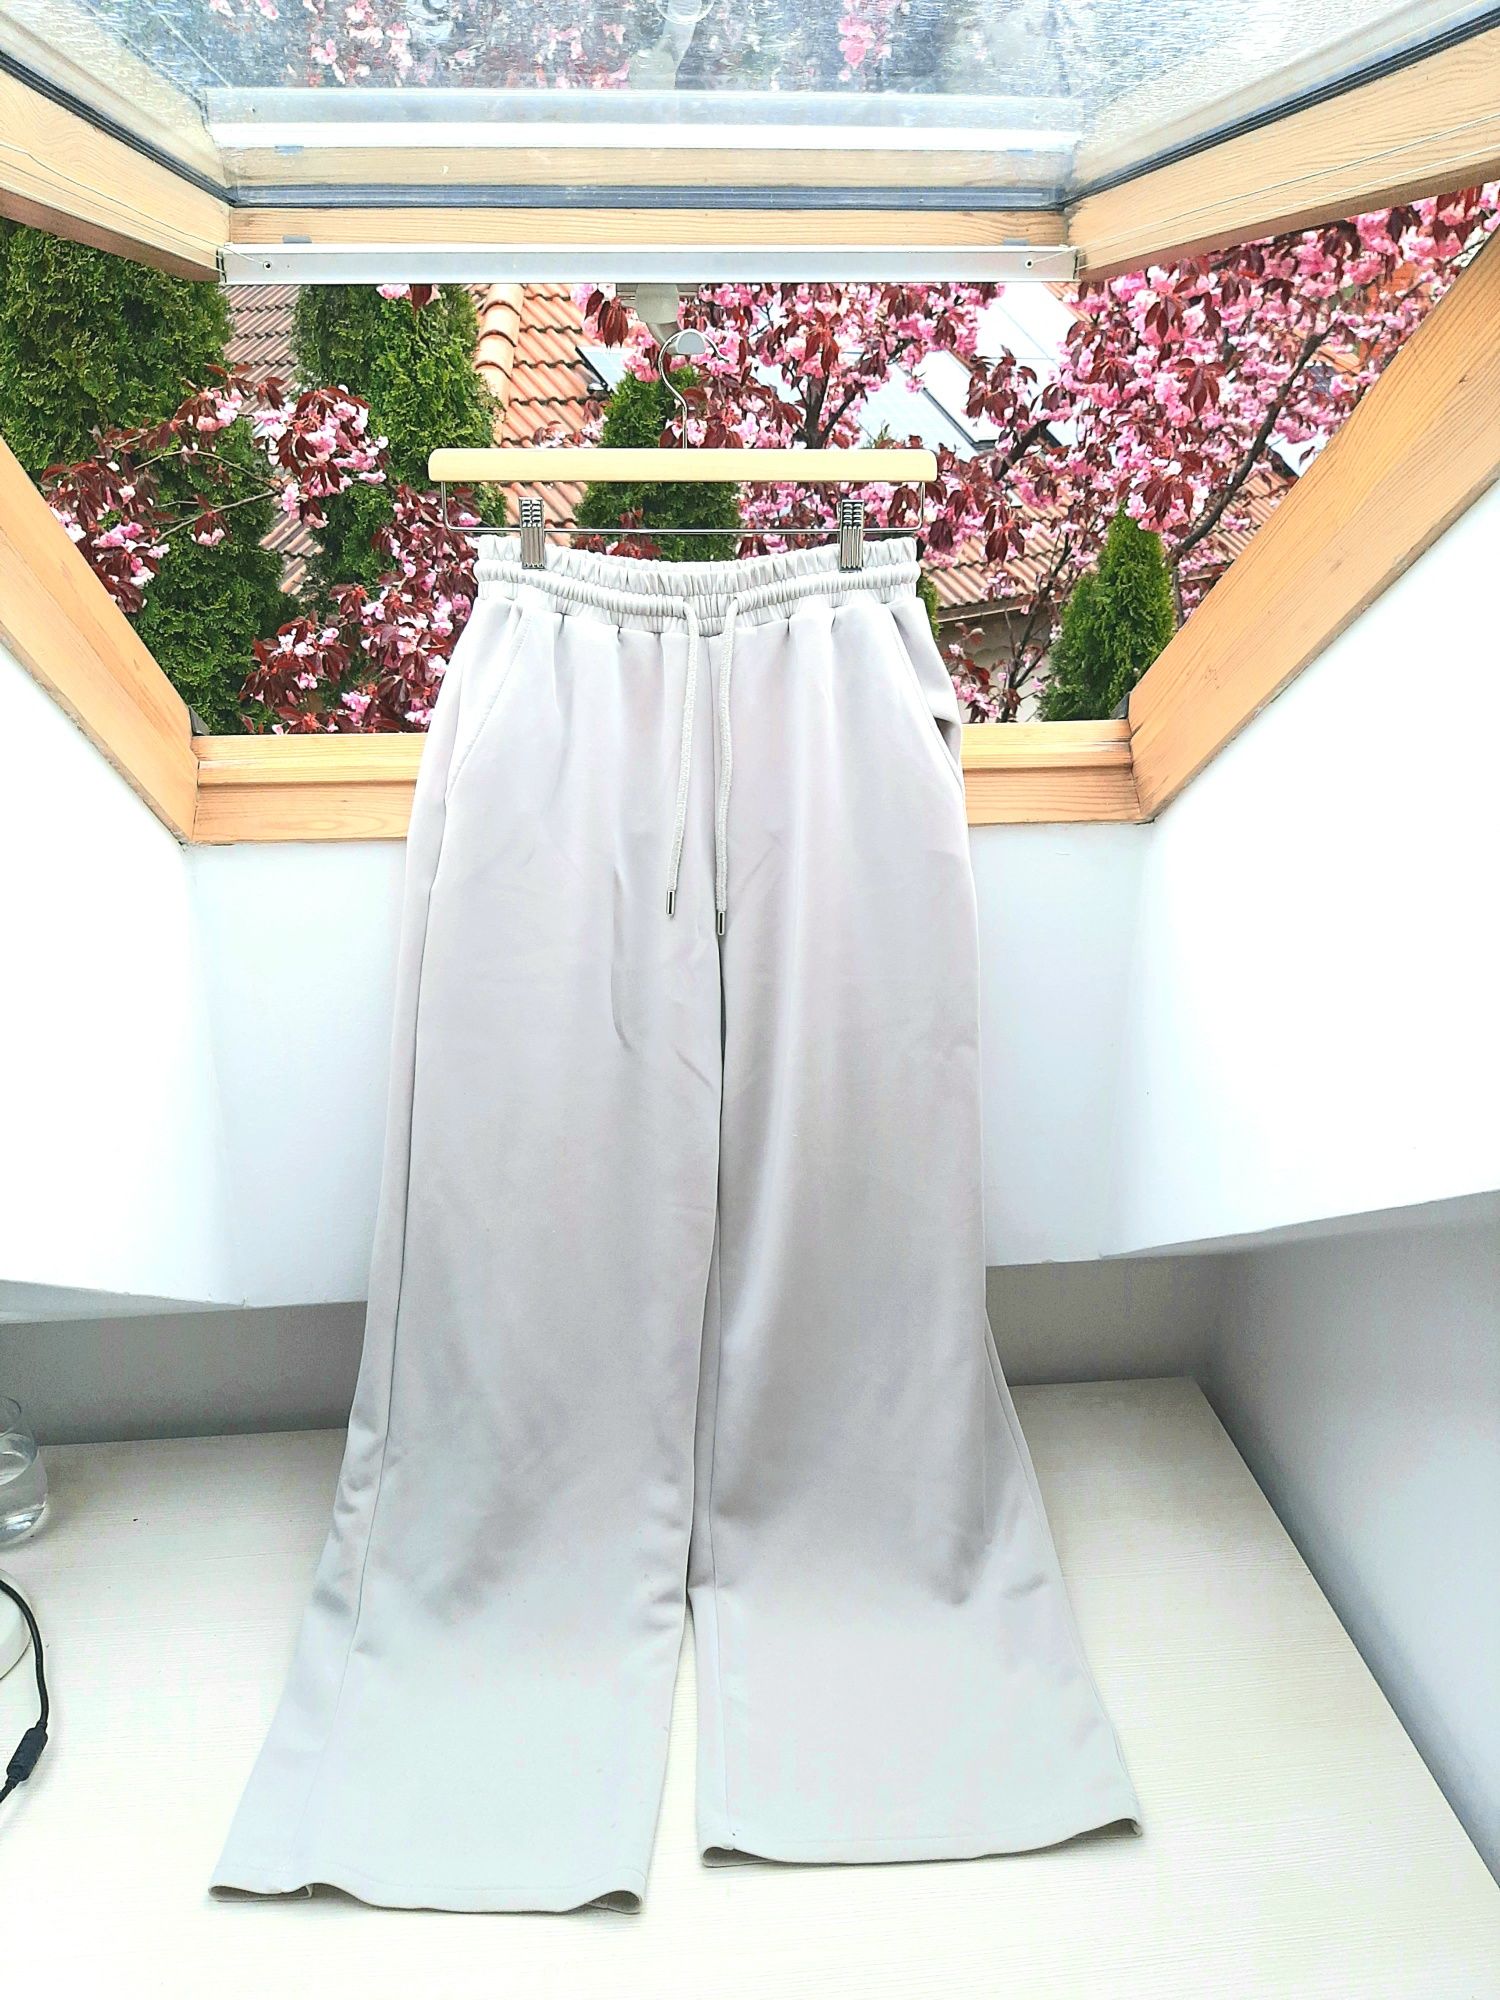 Spodnie z modalu M stradivarius
Modal 48%
Bardzo komfortowe